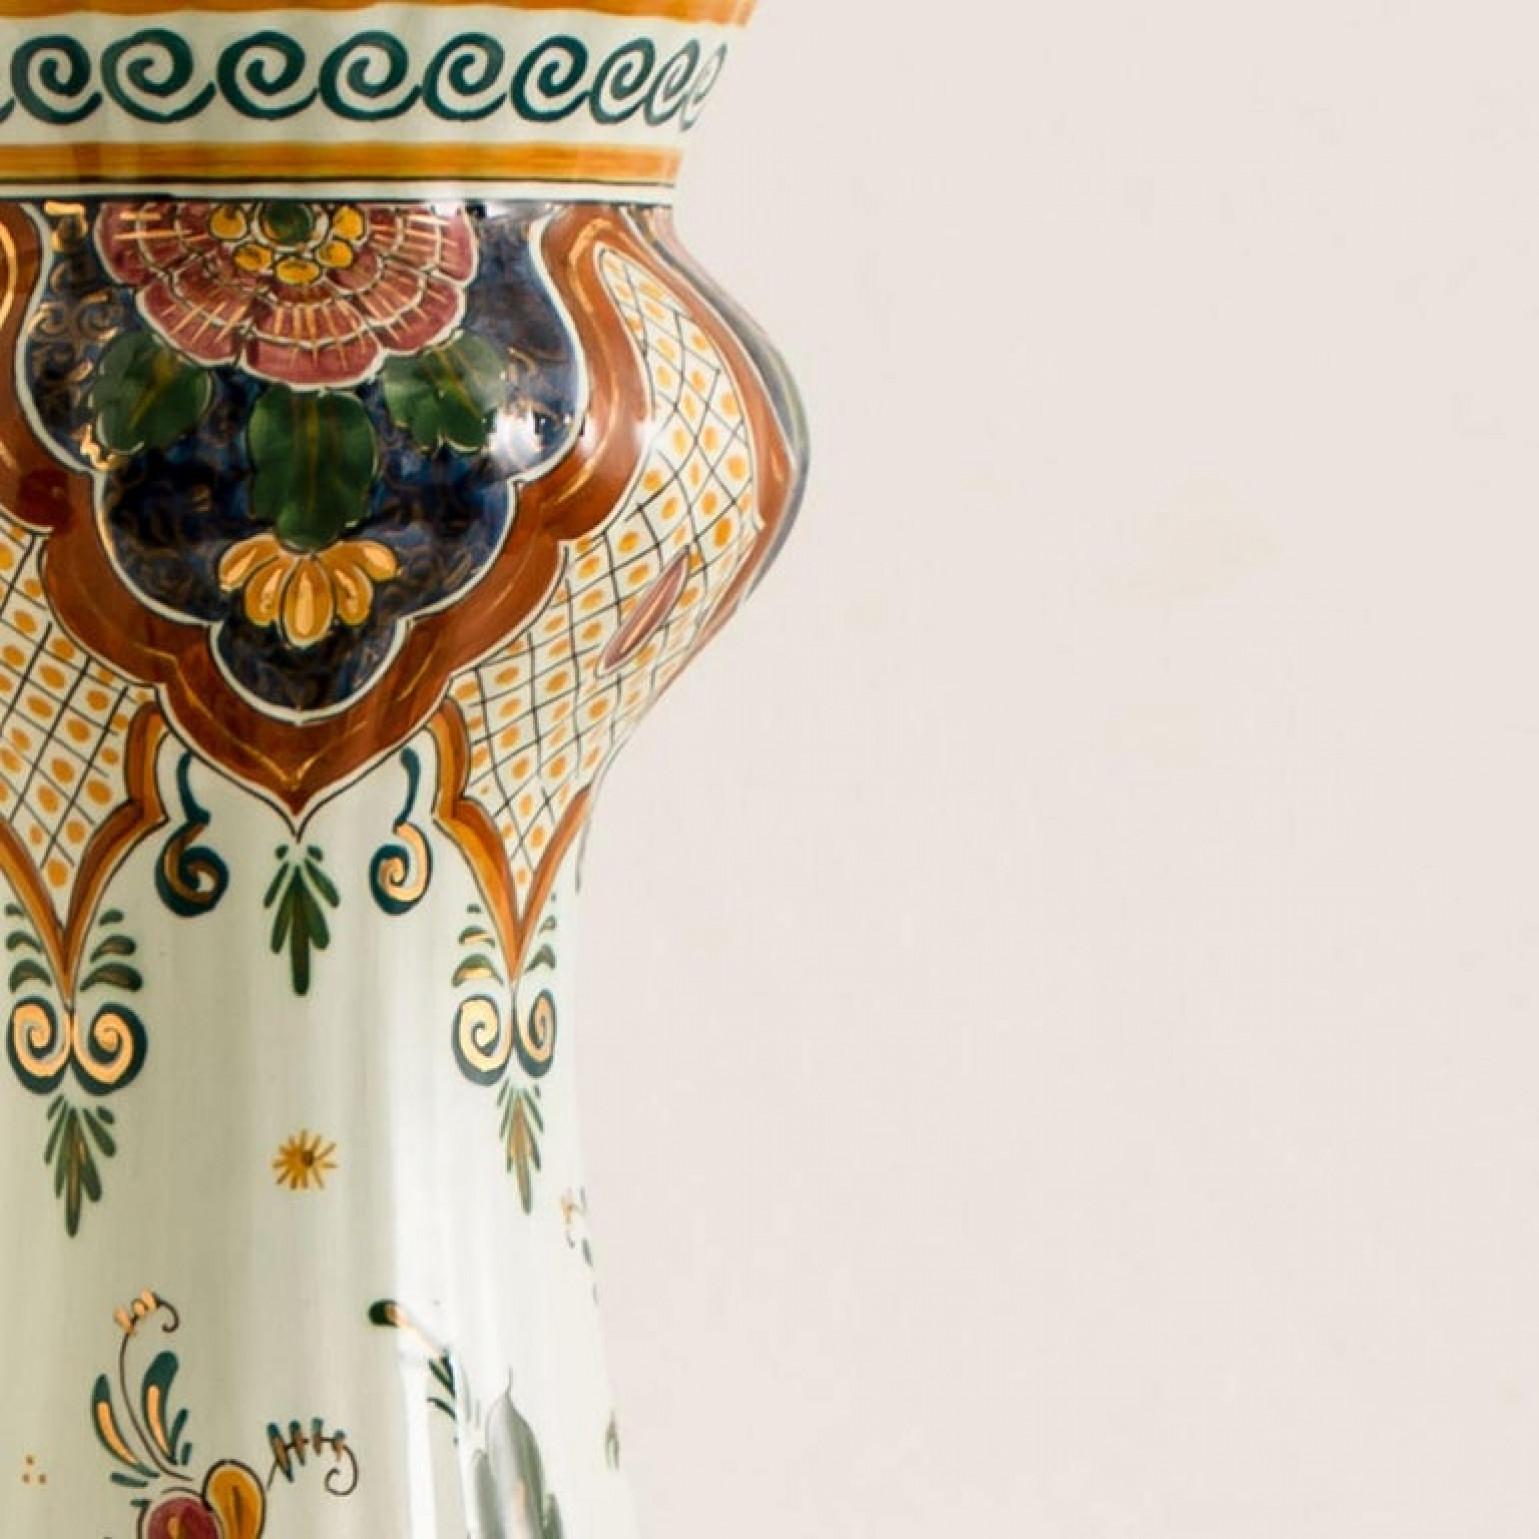 Cette exceptionnelle lampe à couvercle en céramique polychrome de Delft (vase converti en lampe) est élégante tant par sa forme que par son motif coloré peint à la main. Fabriqué vers 1930, le Delft polychrome présente un motif peint à la main de